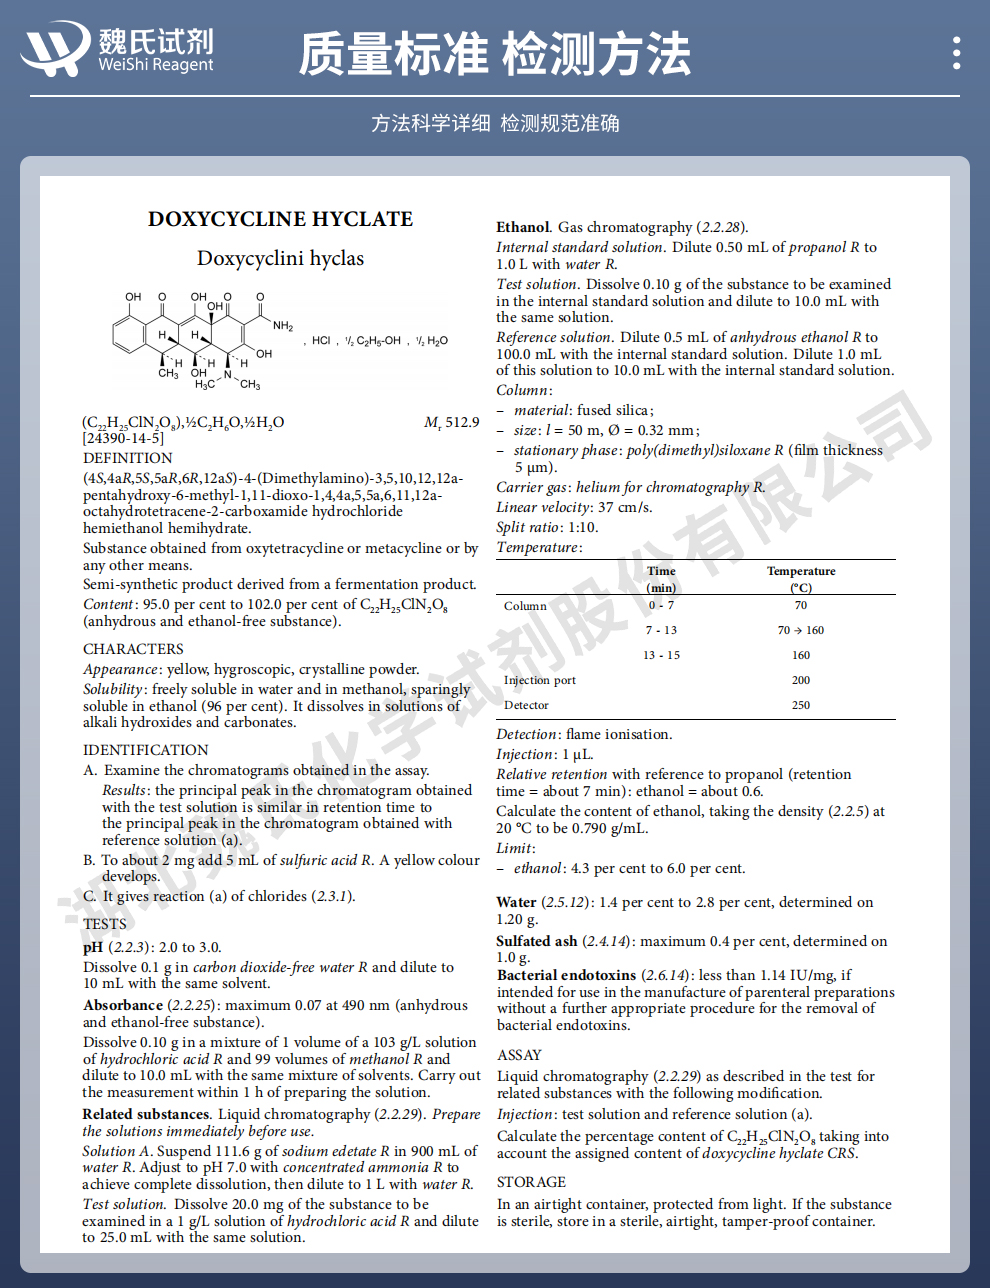 盐酸多西环素；盐酸强力霉素-内销标准质量标准和检测方法